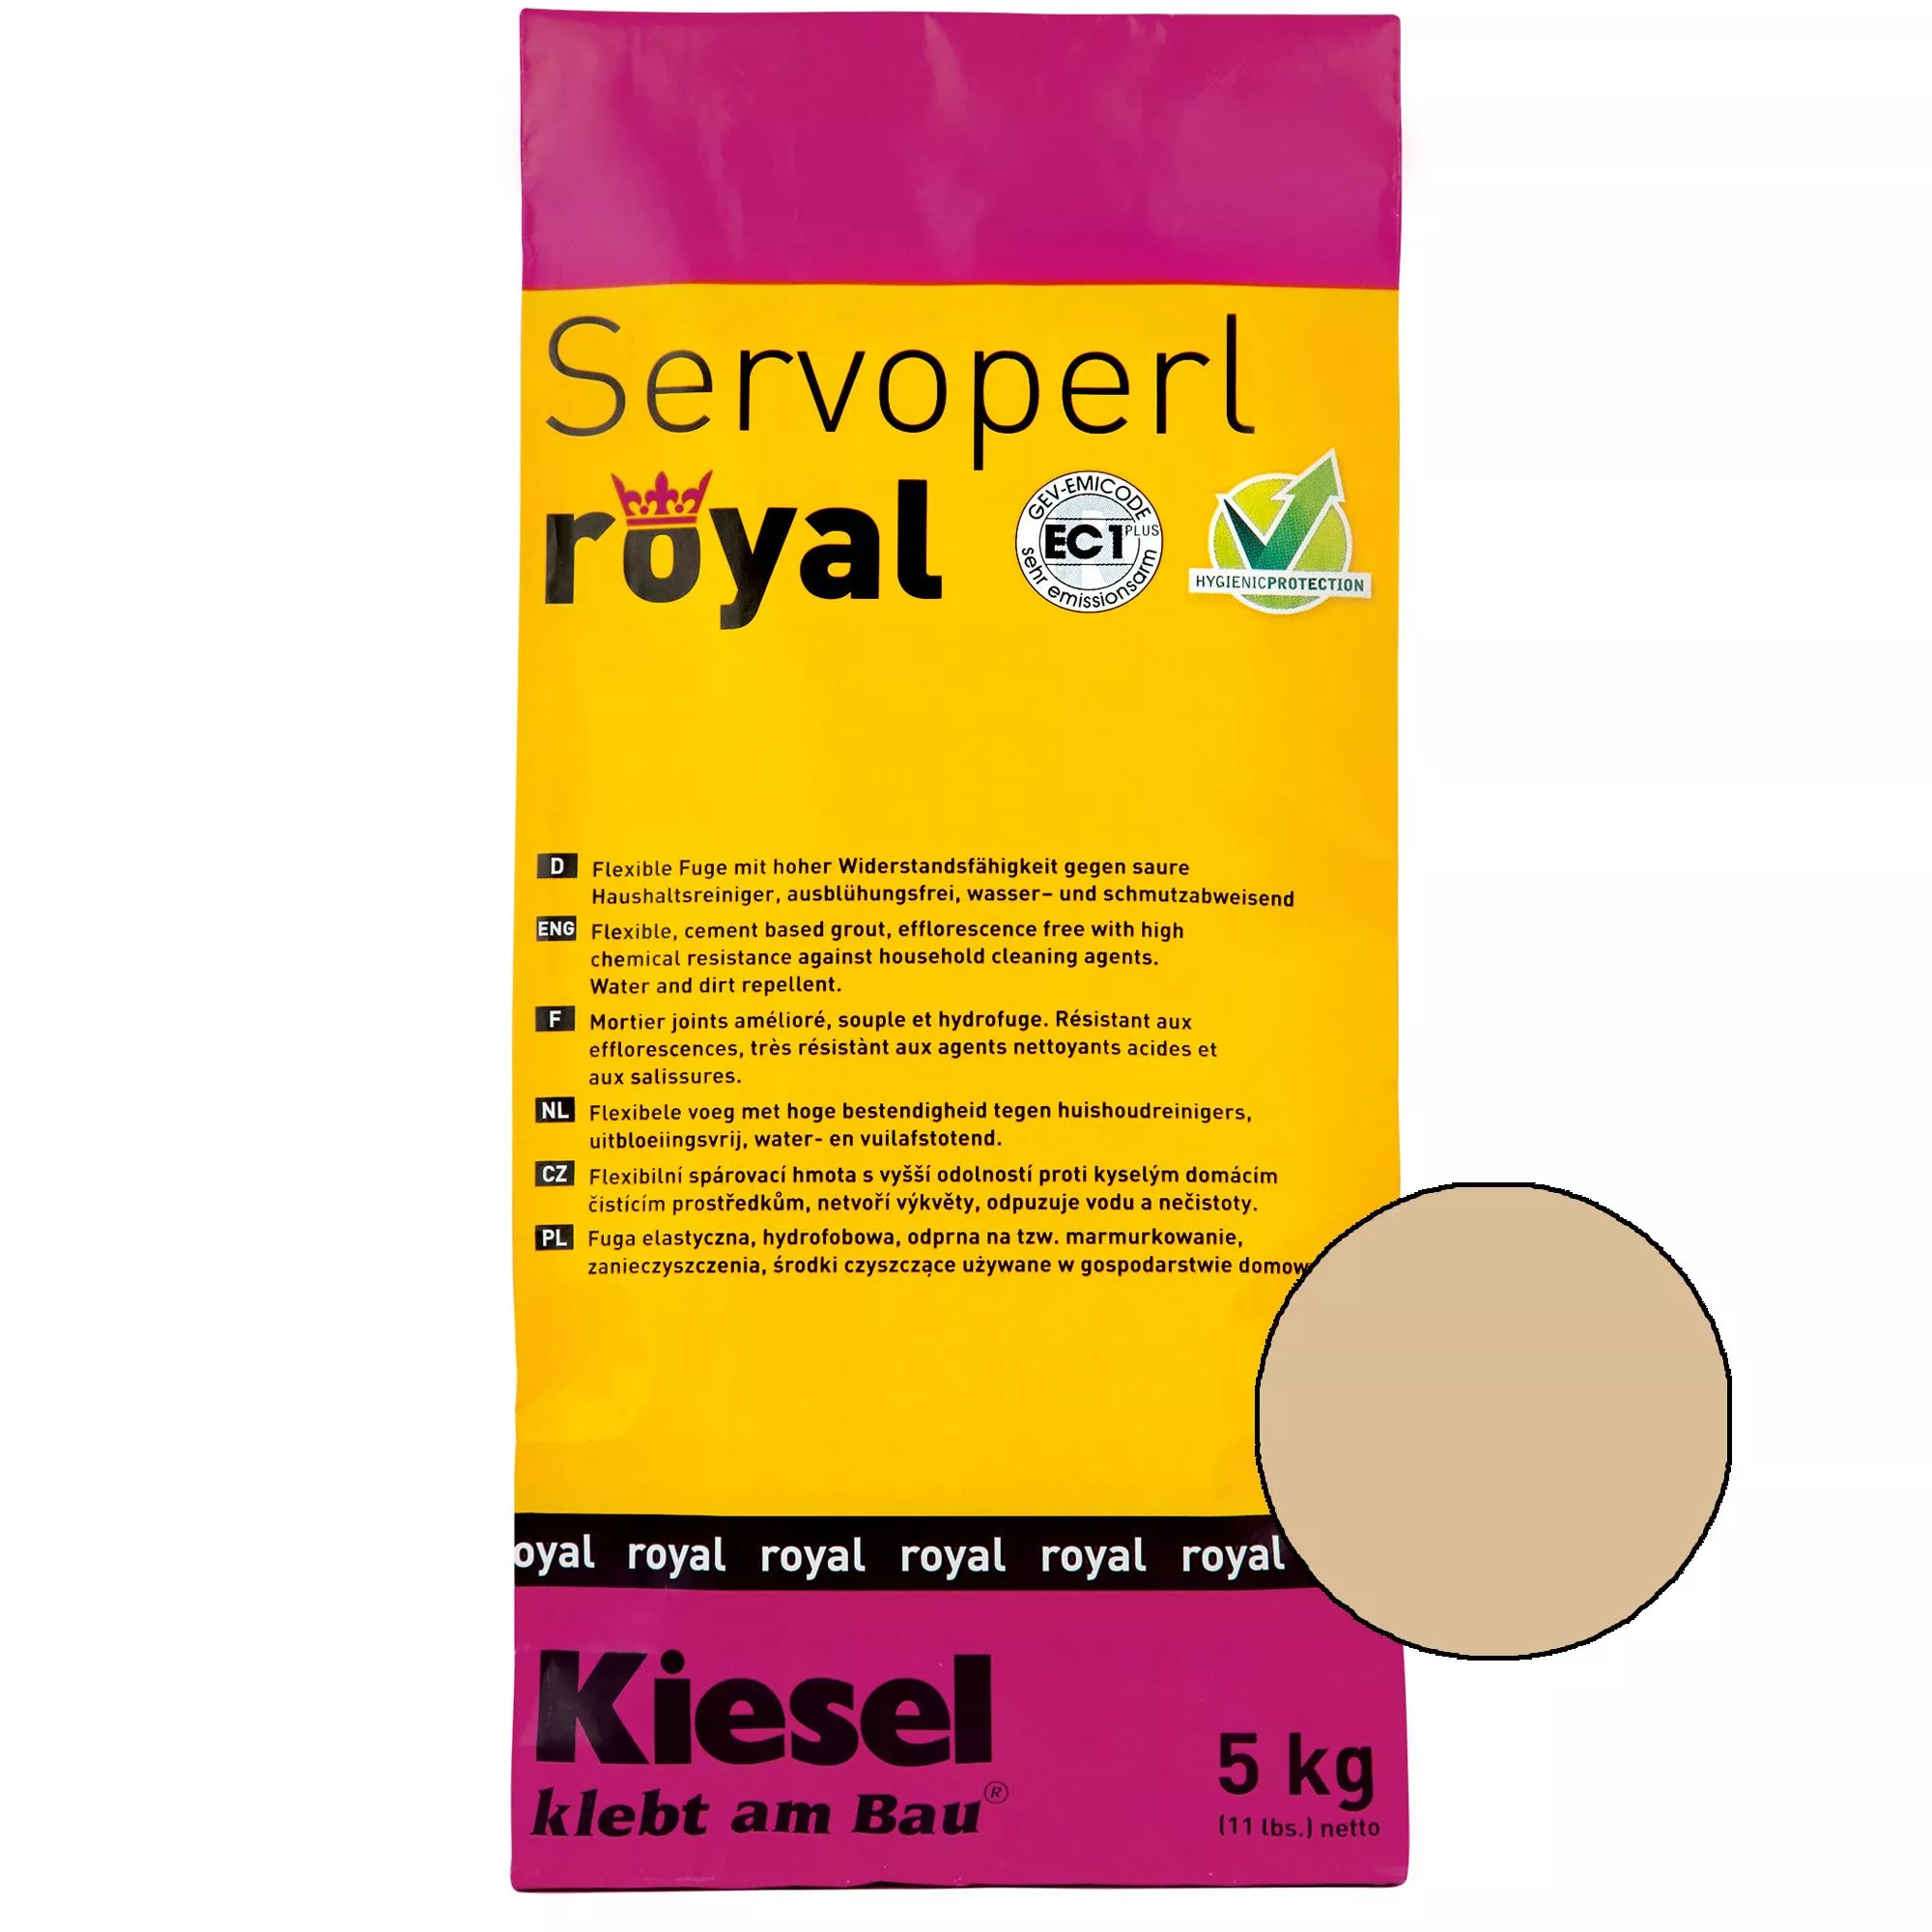 Kiesel Servoperl royal - Flexible, wasser- und schmutzabweisende Fuge (5KG Safari Sand)